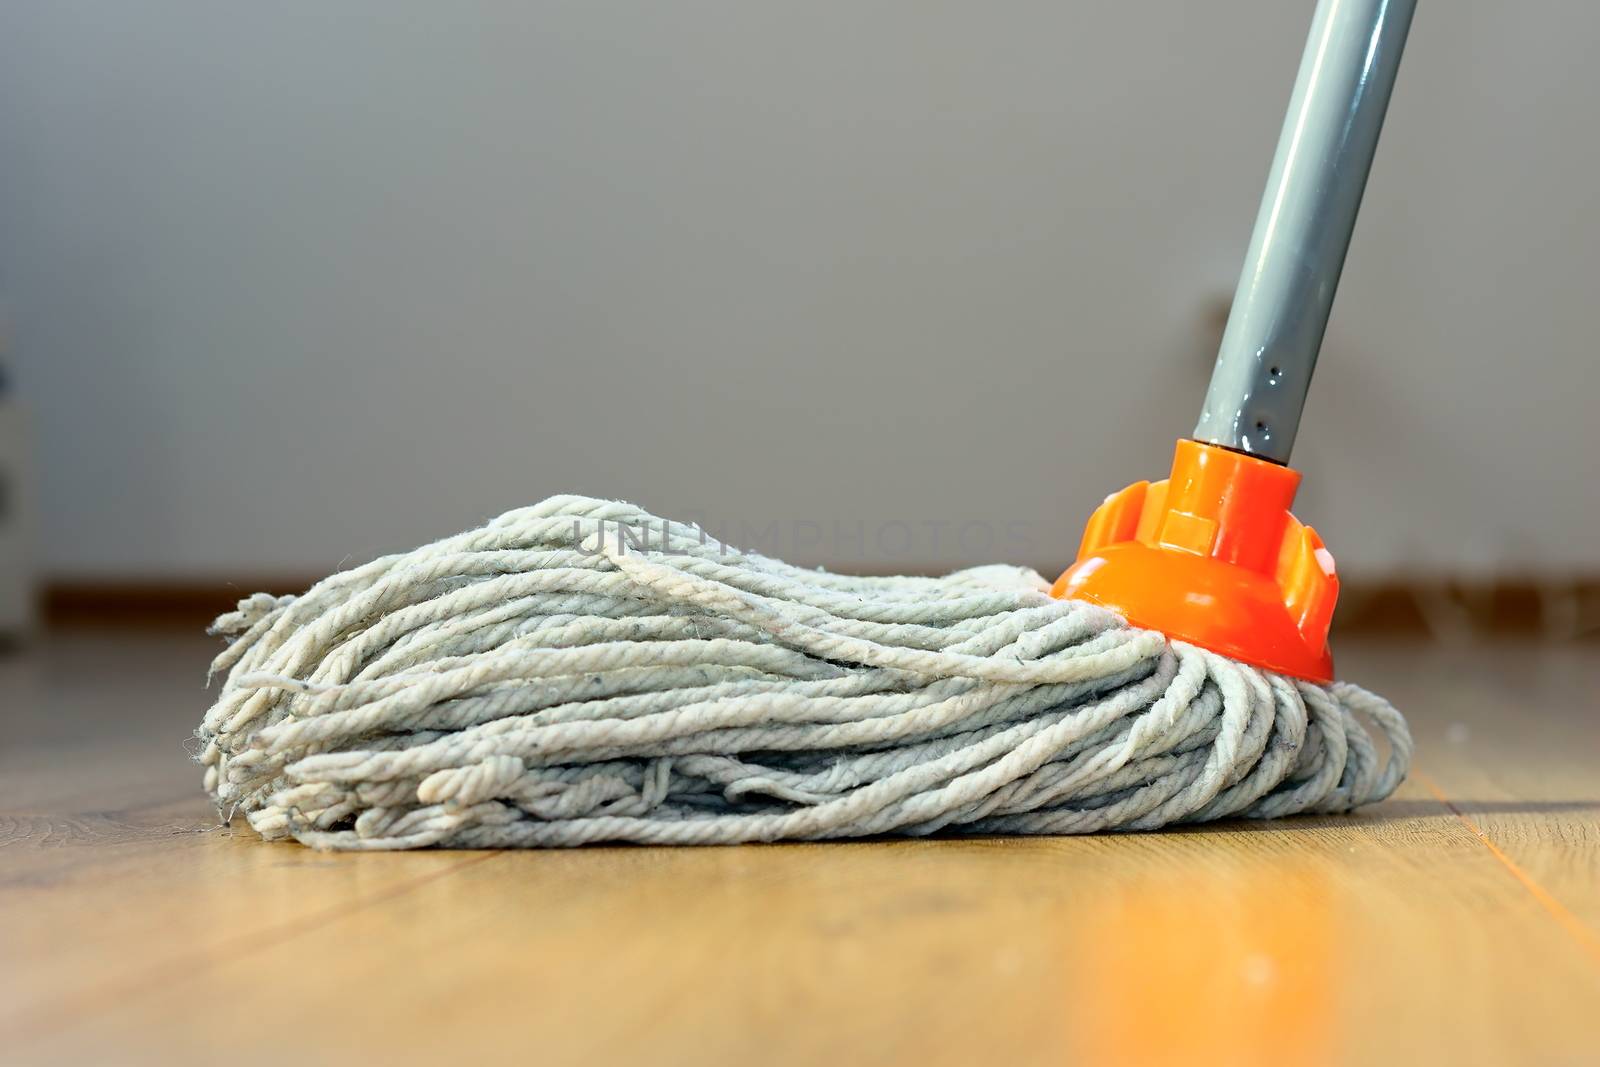 cleaning wooden floor with orange wet mop